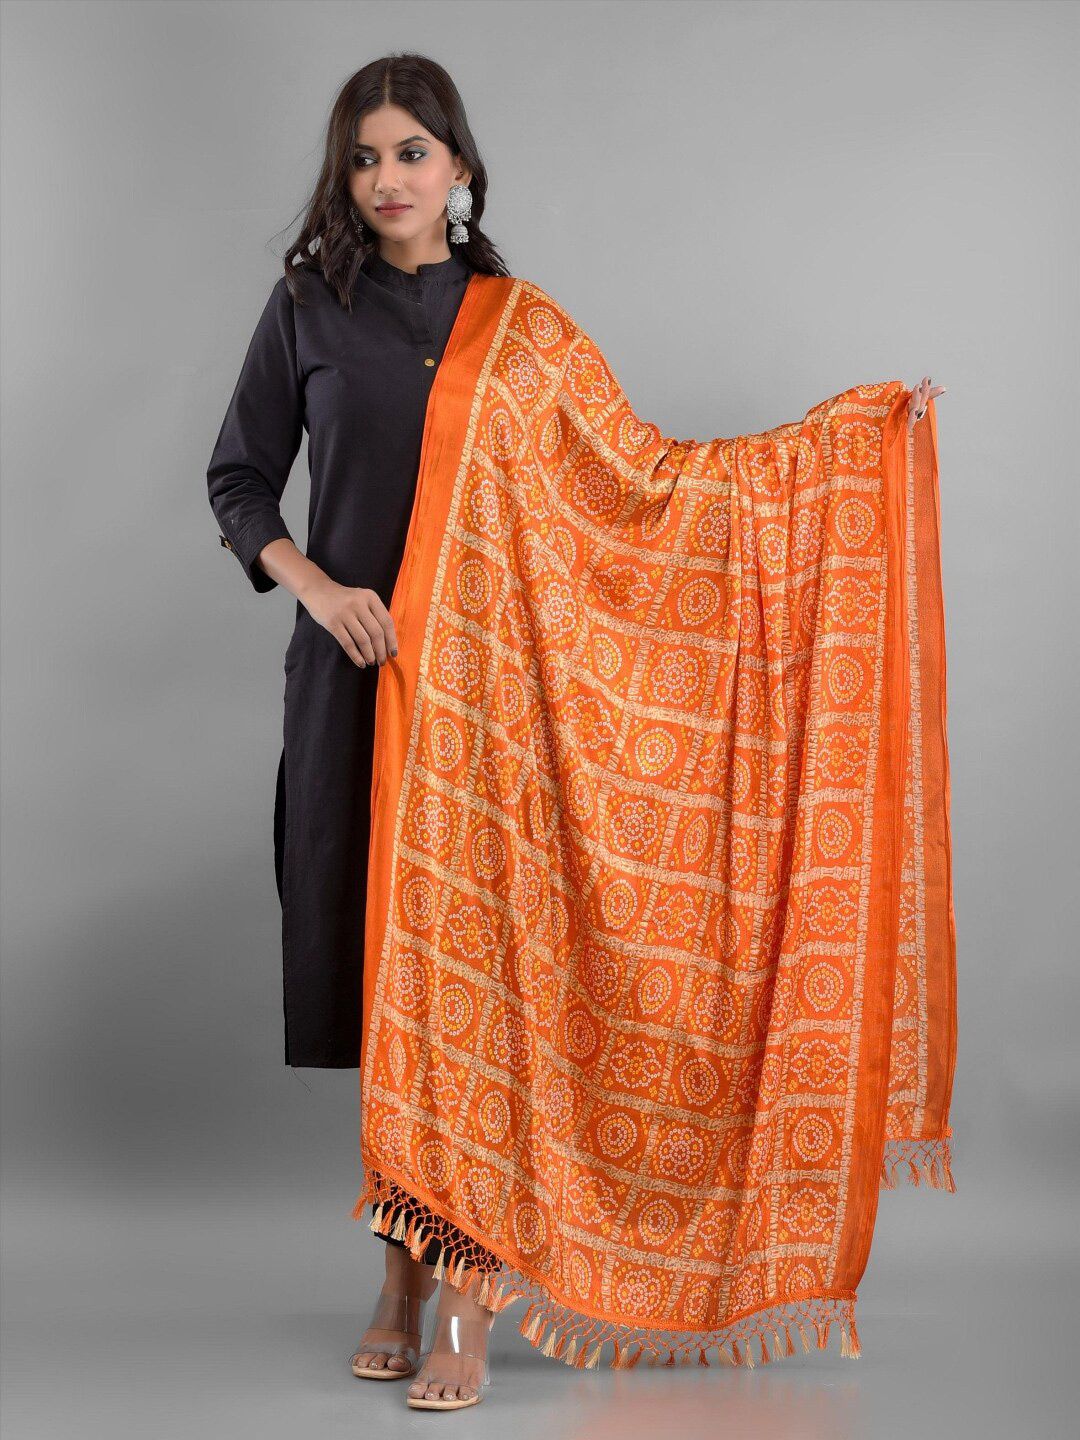 Apratim women's Orange & White Printed Bandhani Dupatta Price in India